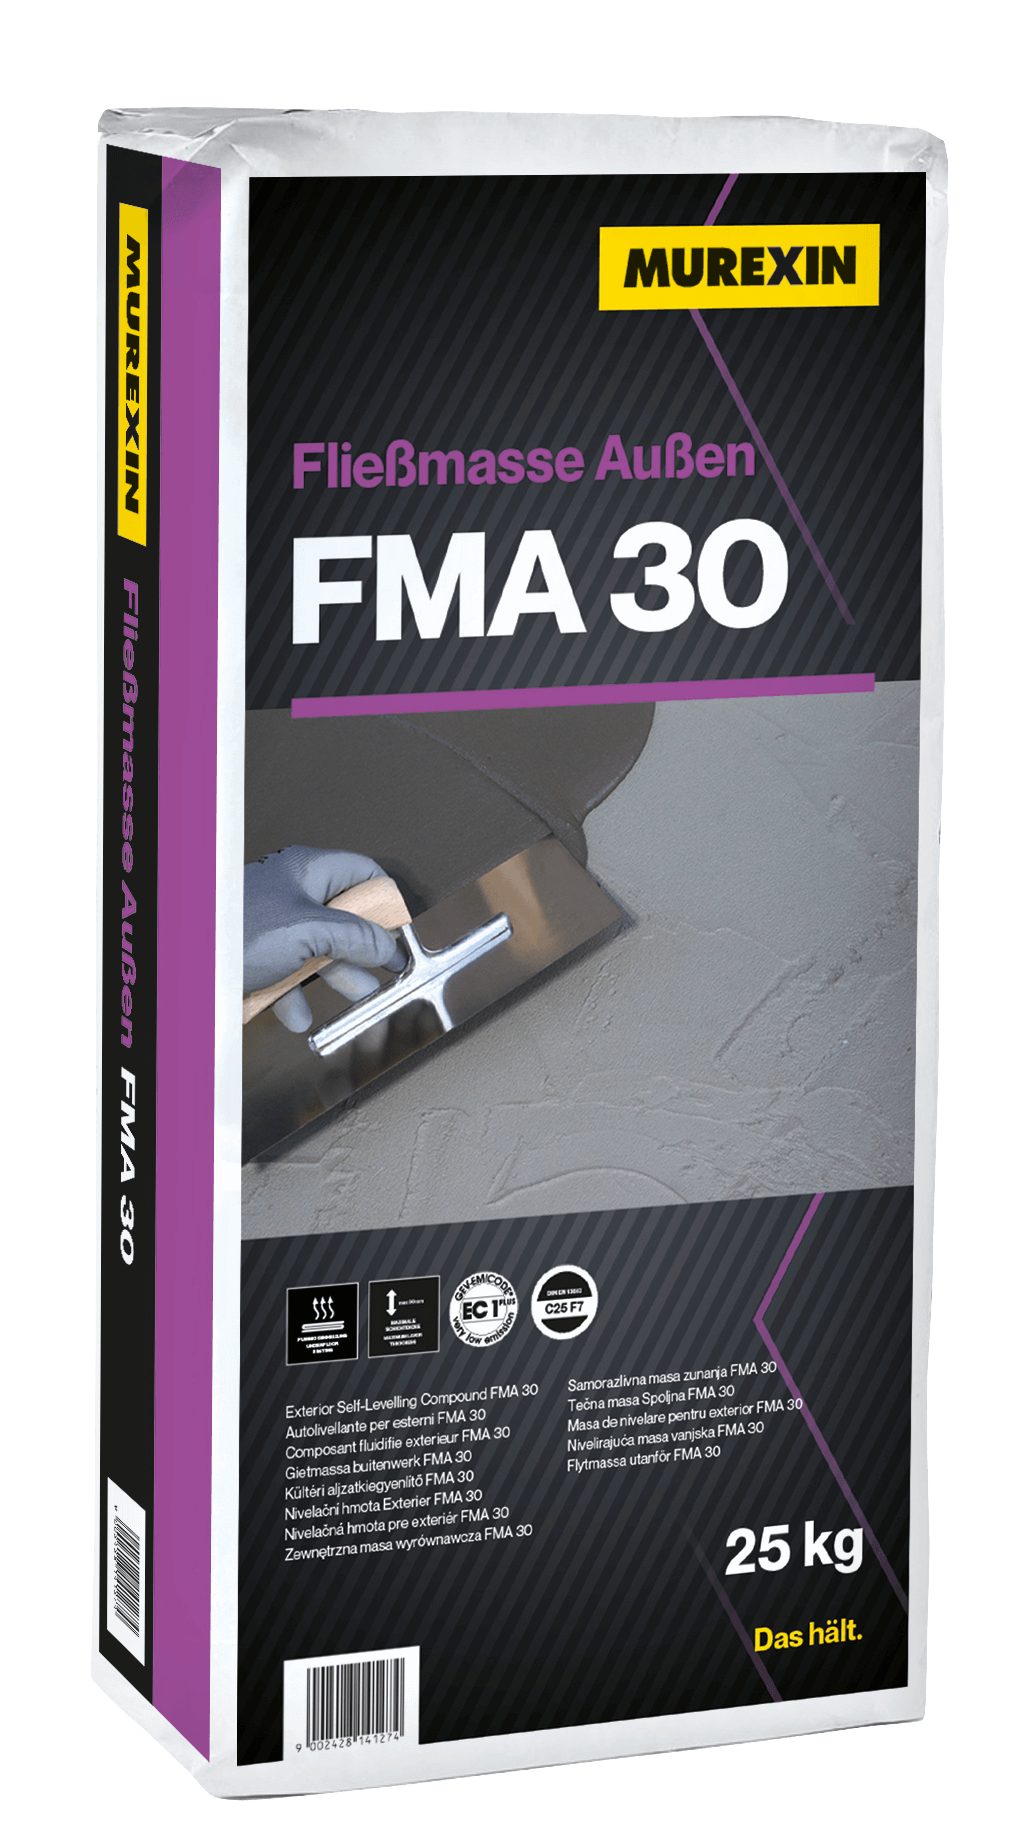 Fliessmasse Aussen FMA 30 / Top Level Extra 530